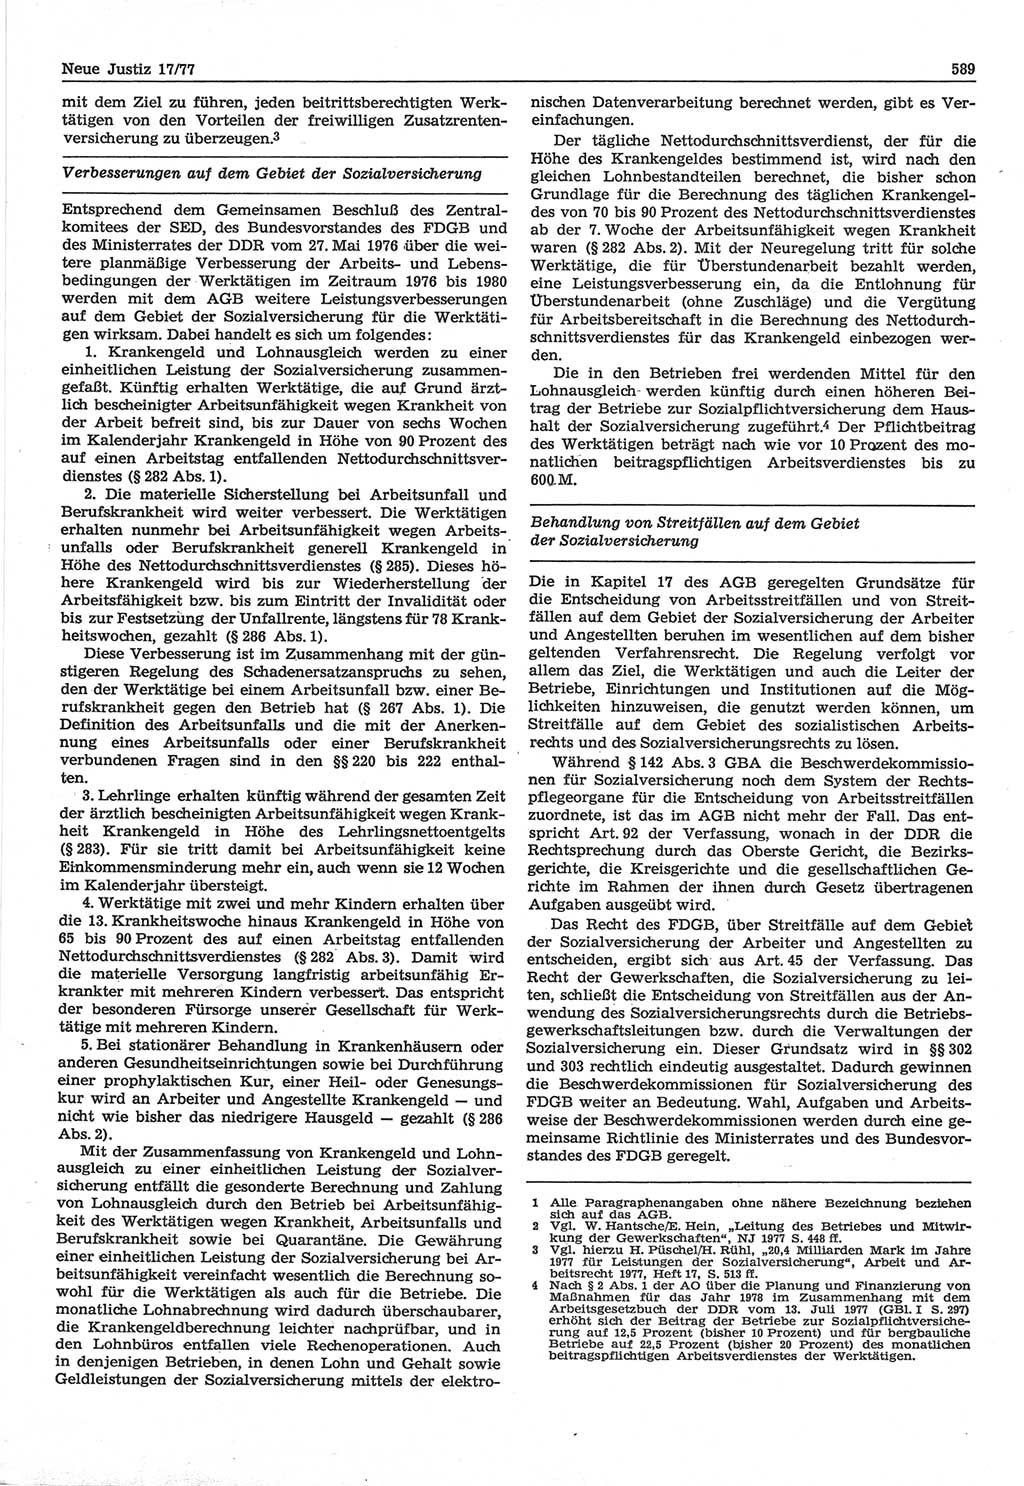 Neue Justiz (NJ), Zeitschrift für Recht und Rechtswissenschaft-Zeitschrift, sozialistisches Recht und Gesetzlichkeit, 31. Jahrgang 1977, Seite 589 (NJ DDR 1977, S. 589)